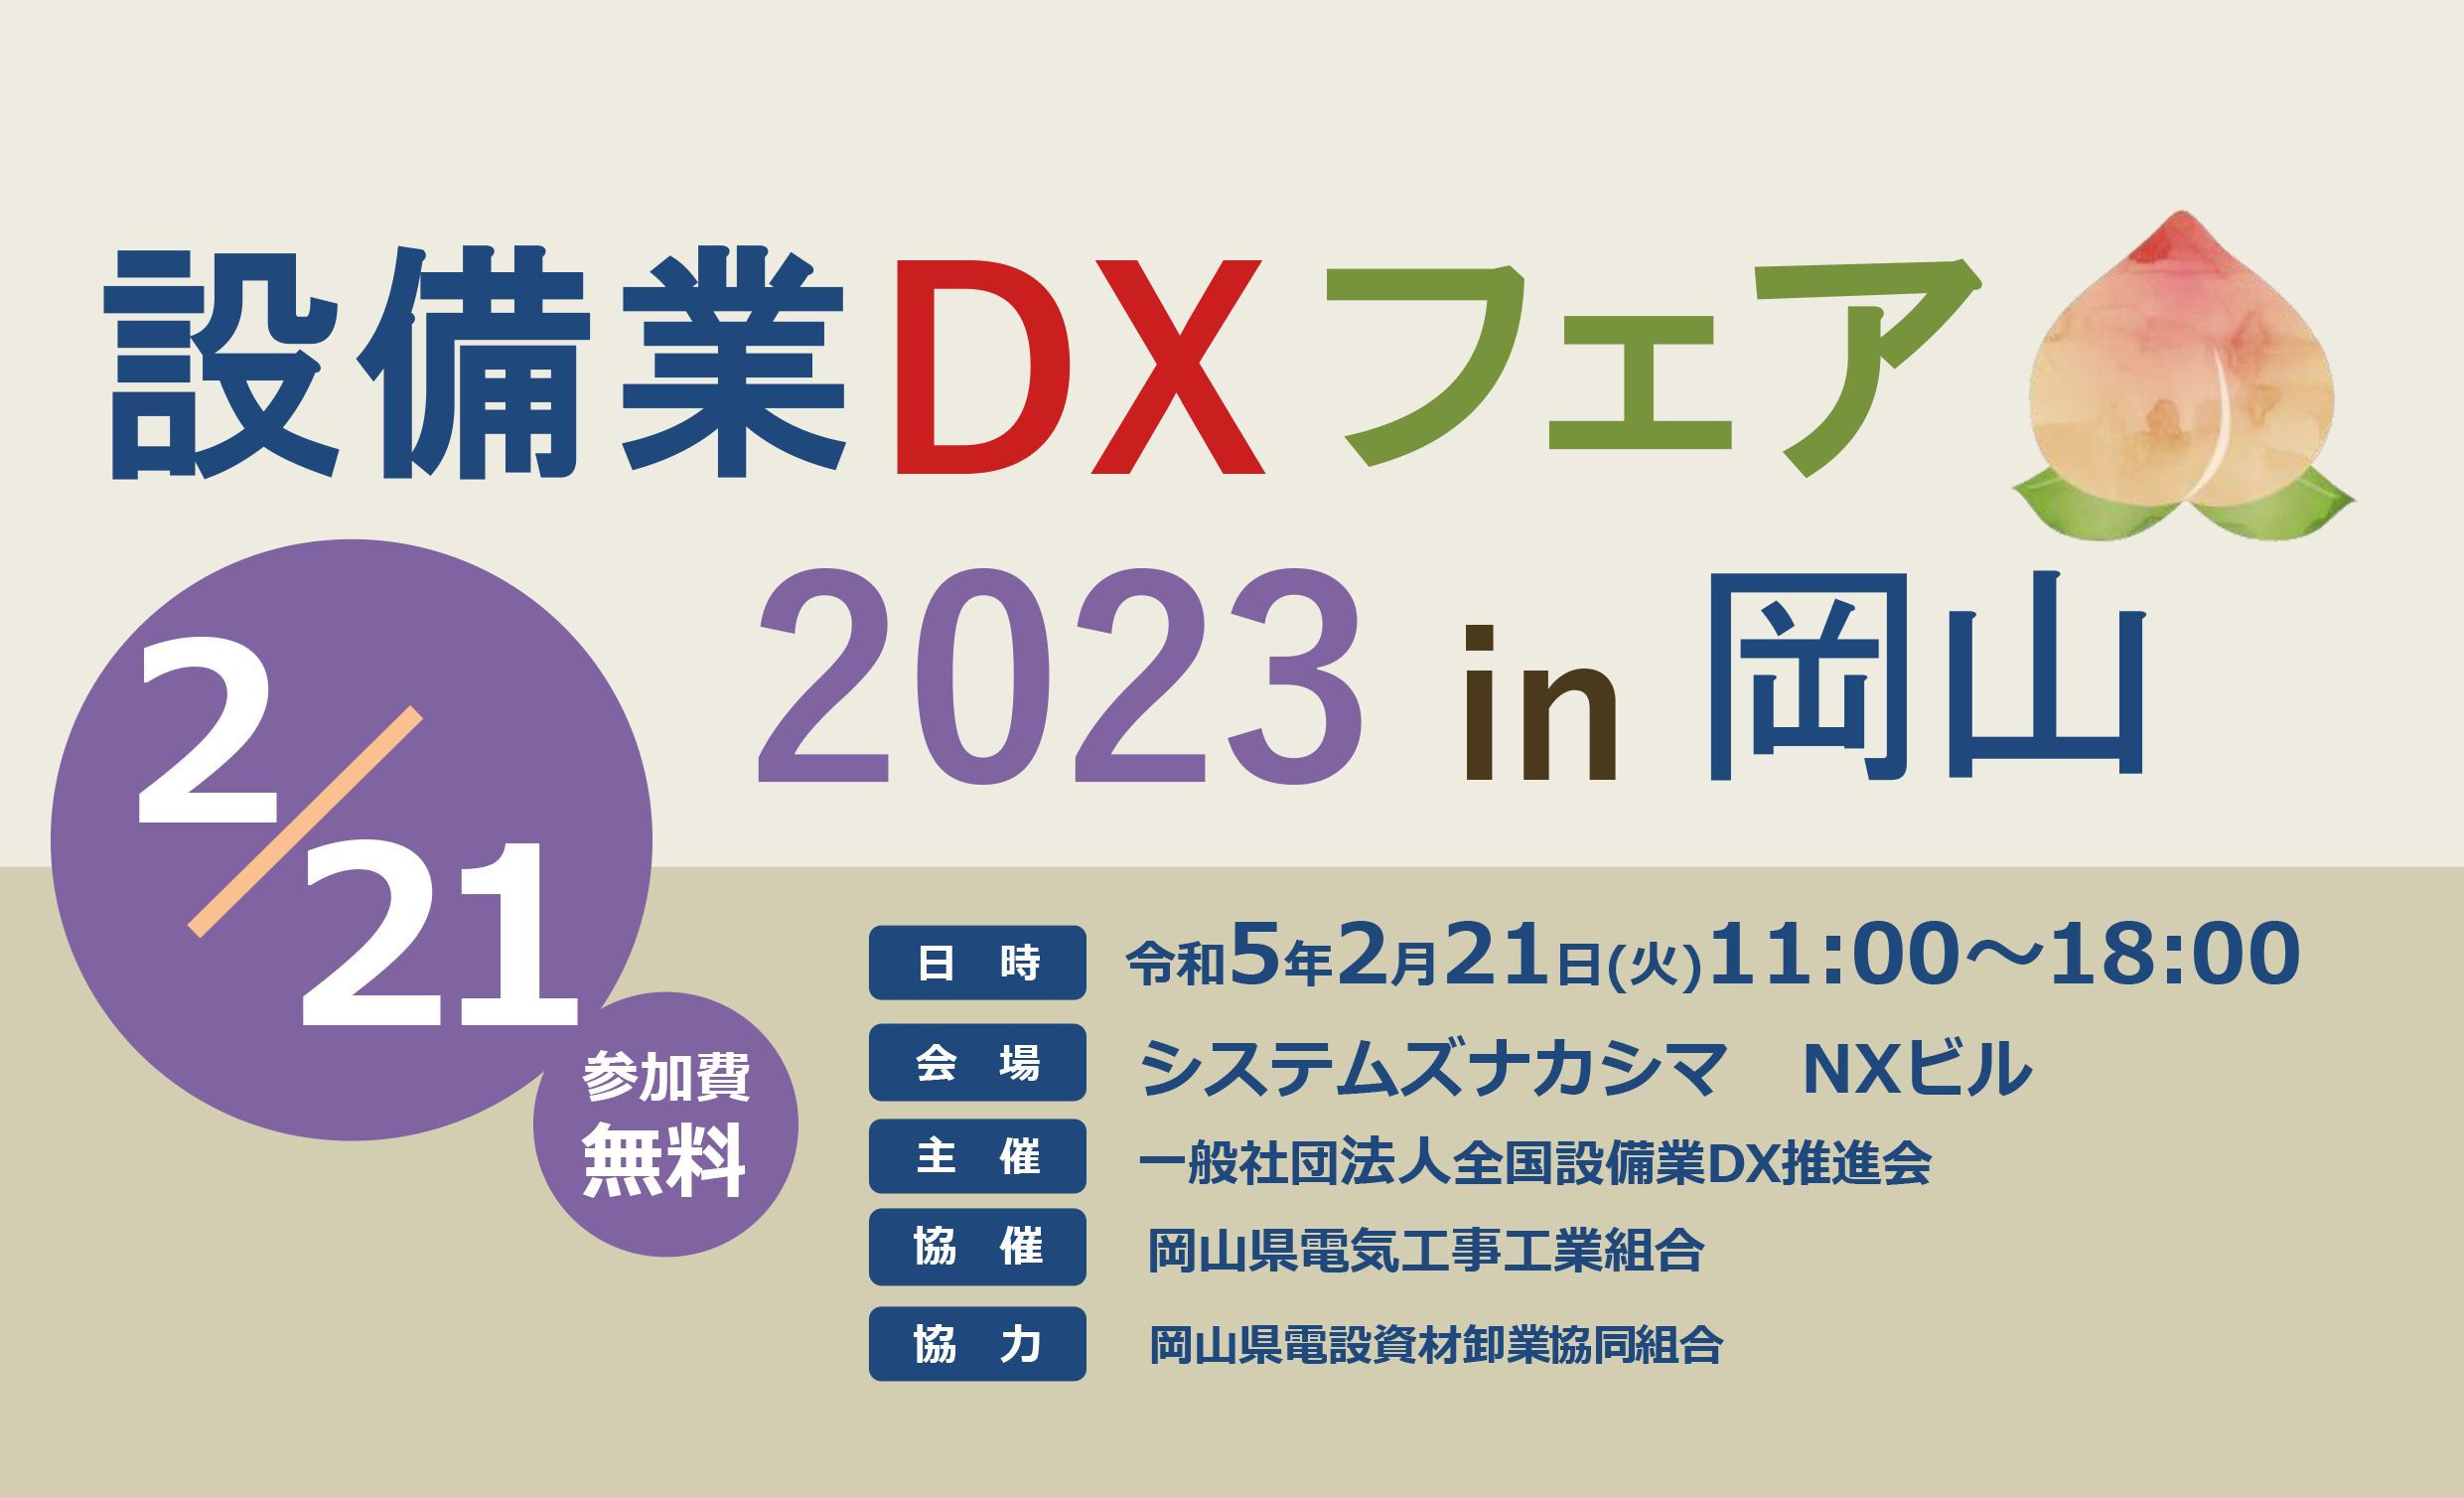 設備業DXフェア2023 in 岡山